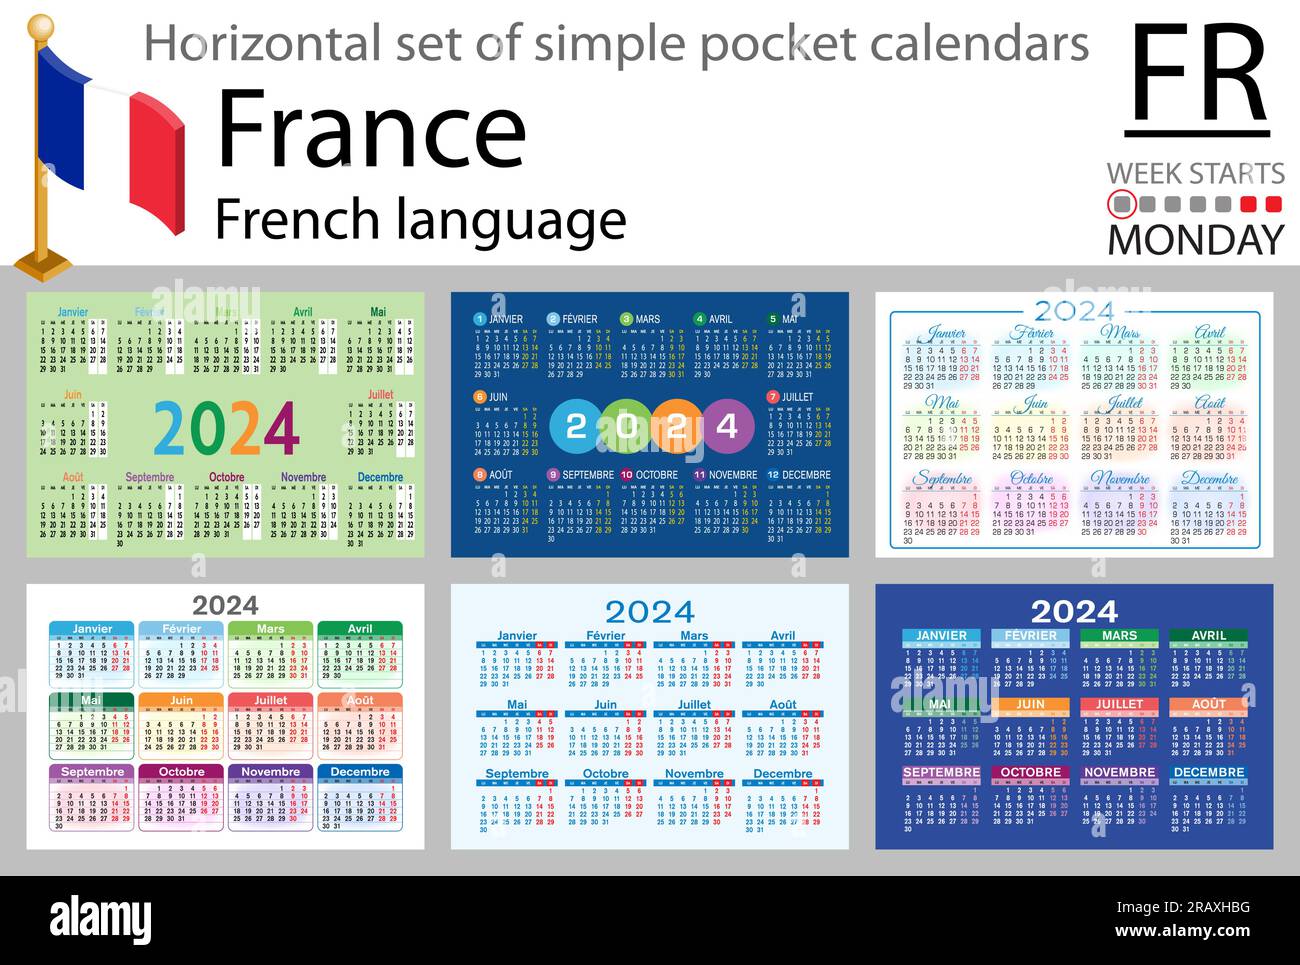 Jeu horizontal français de calendrier de poche pour 2024 (deux